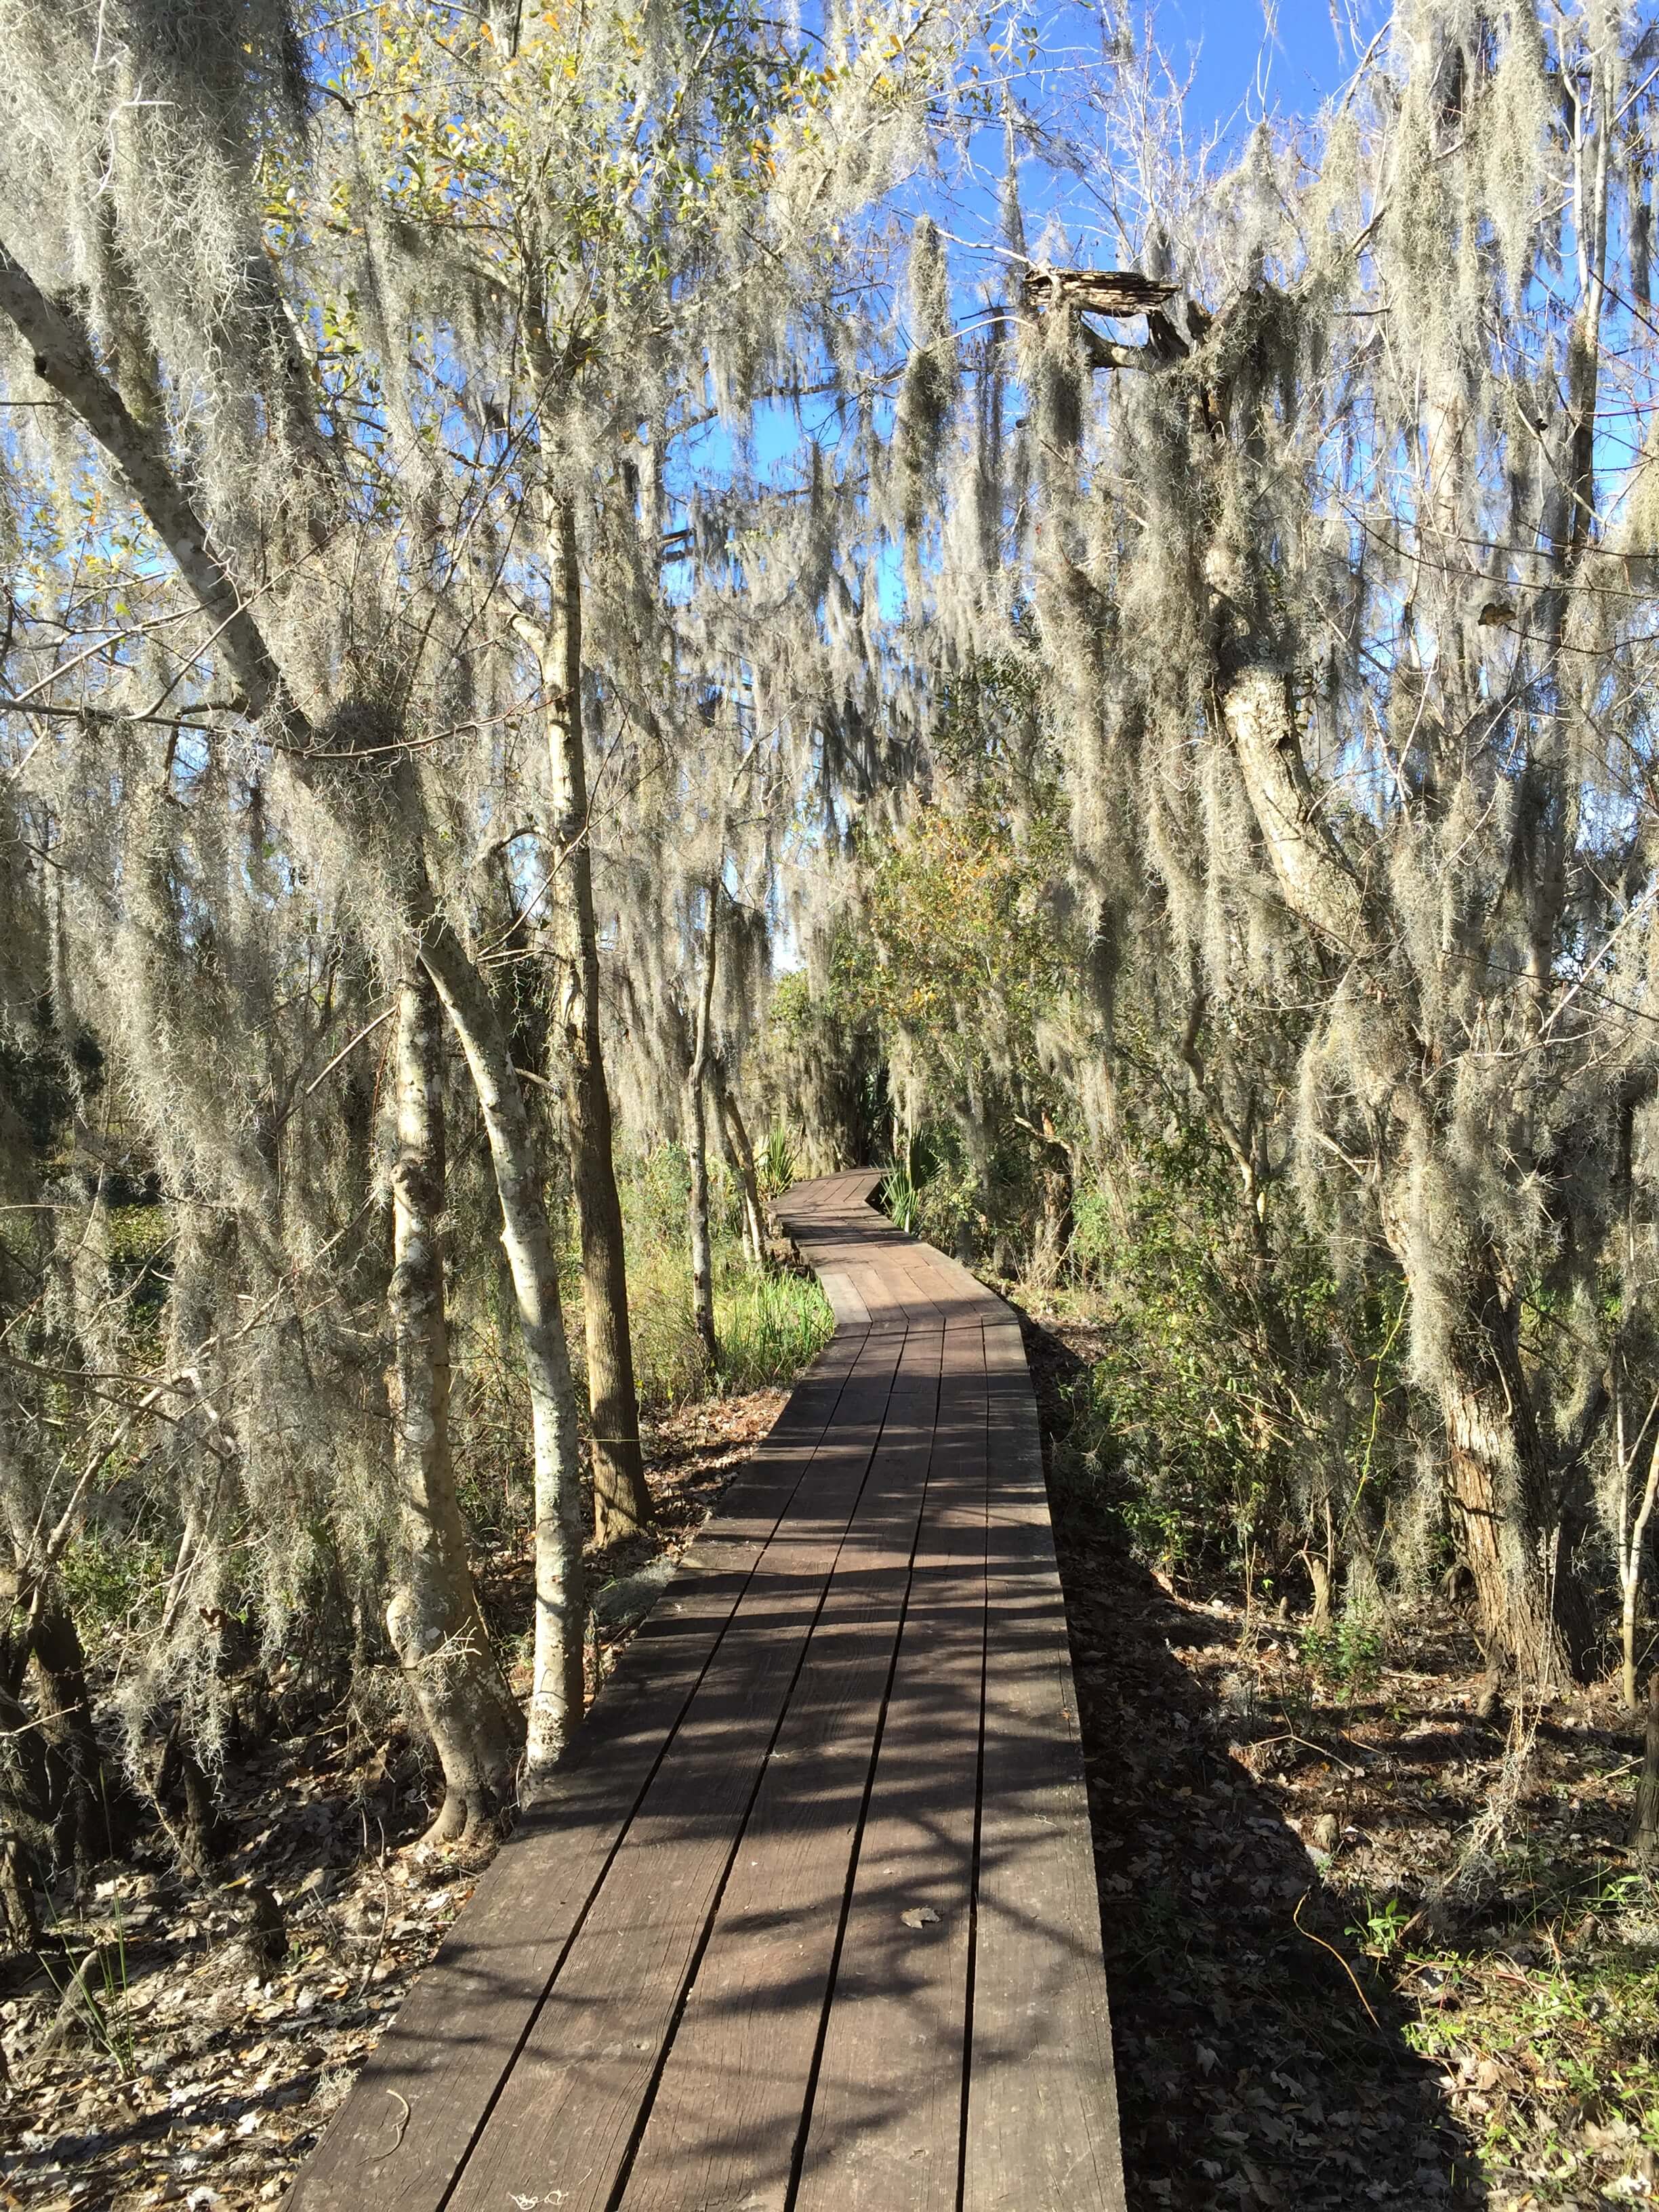 Swamp Boardwalk Hike Near New Orleans